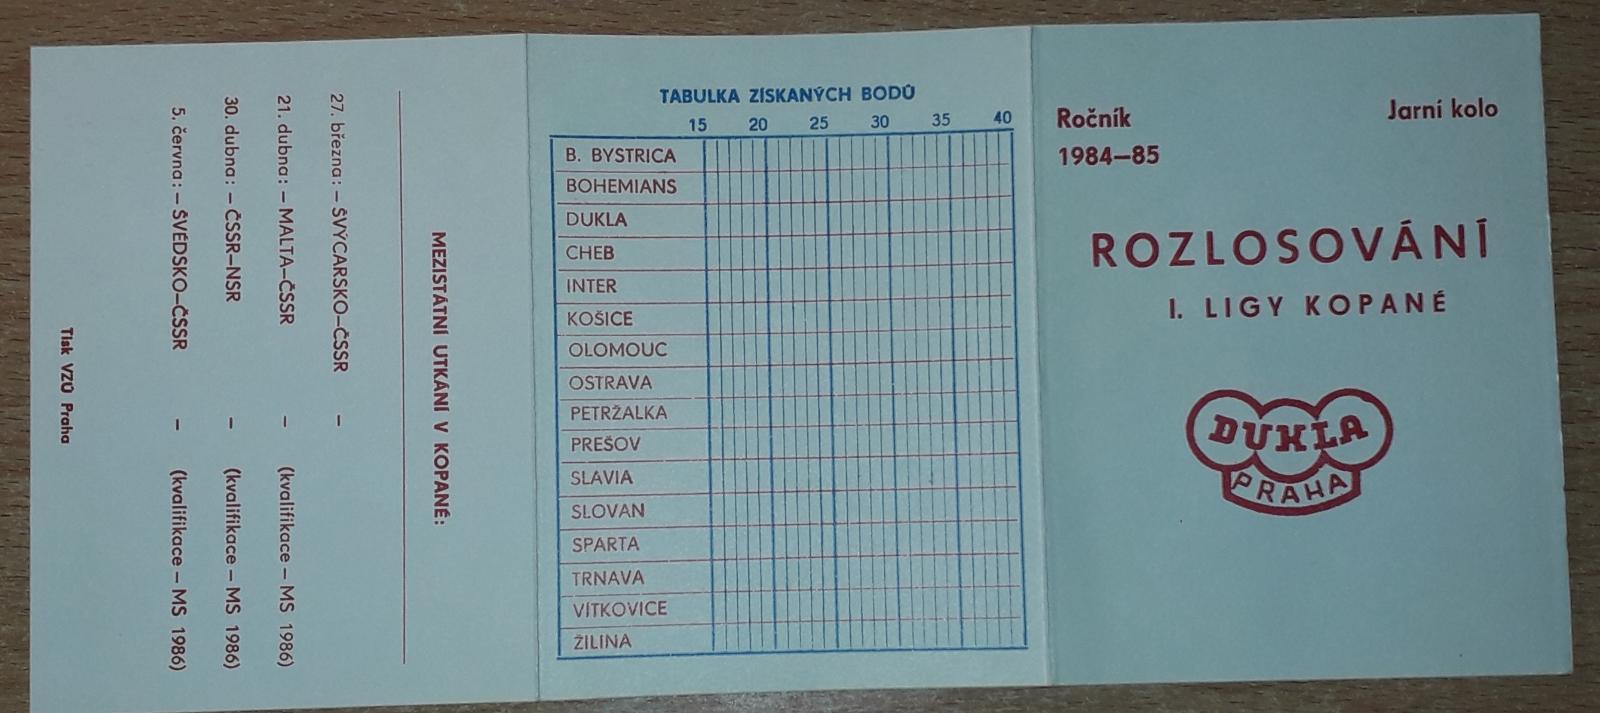 rozlosování I. ligy kopané Dukla Praha 1984-85 jarní kolo - Sběratelství